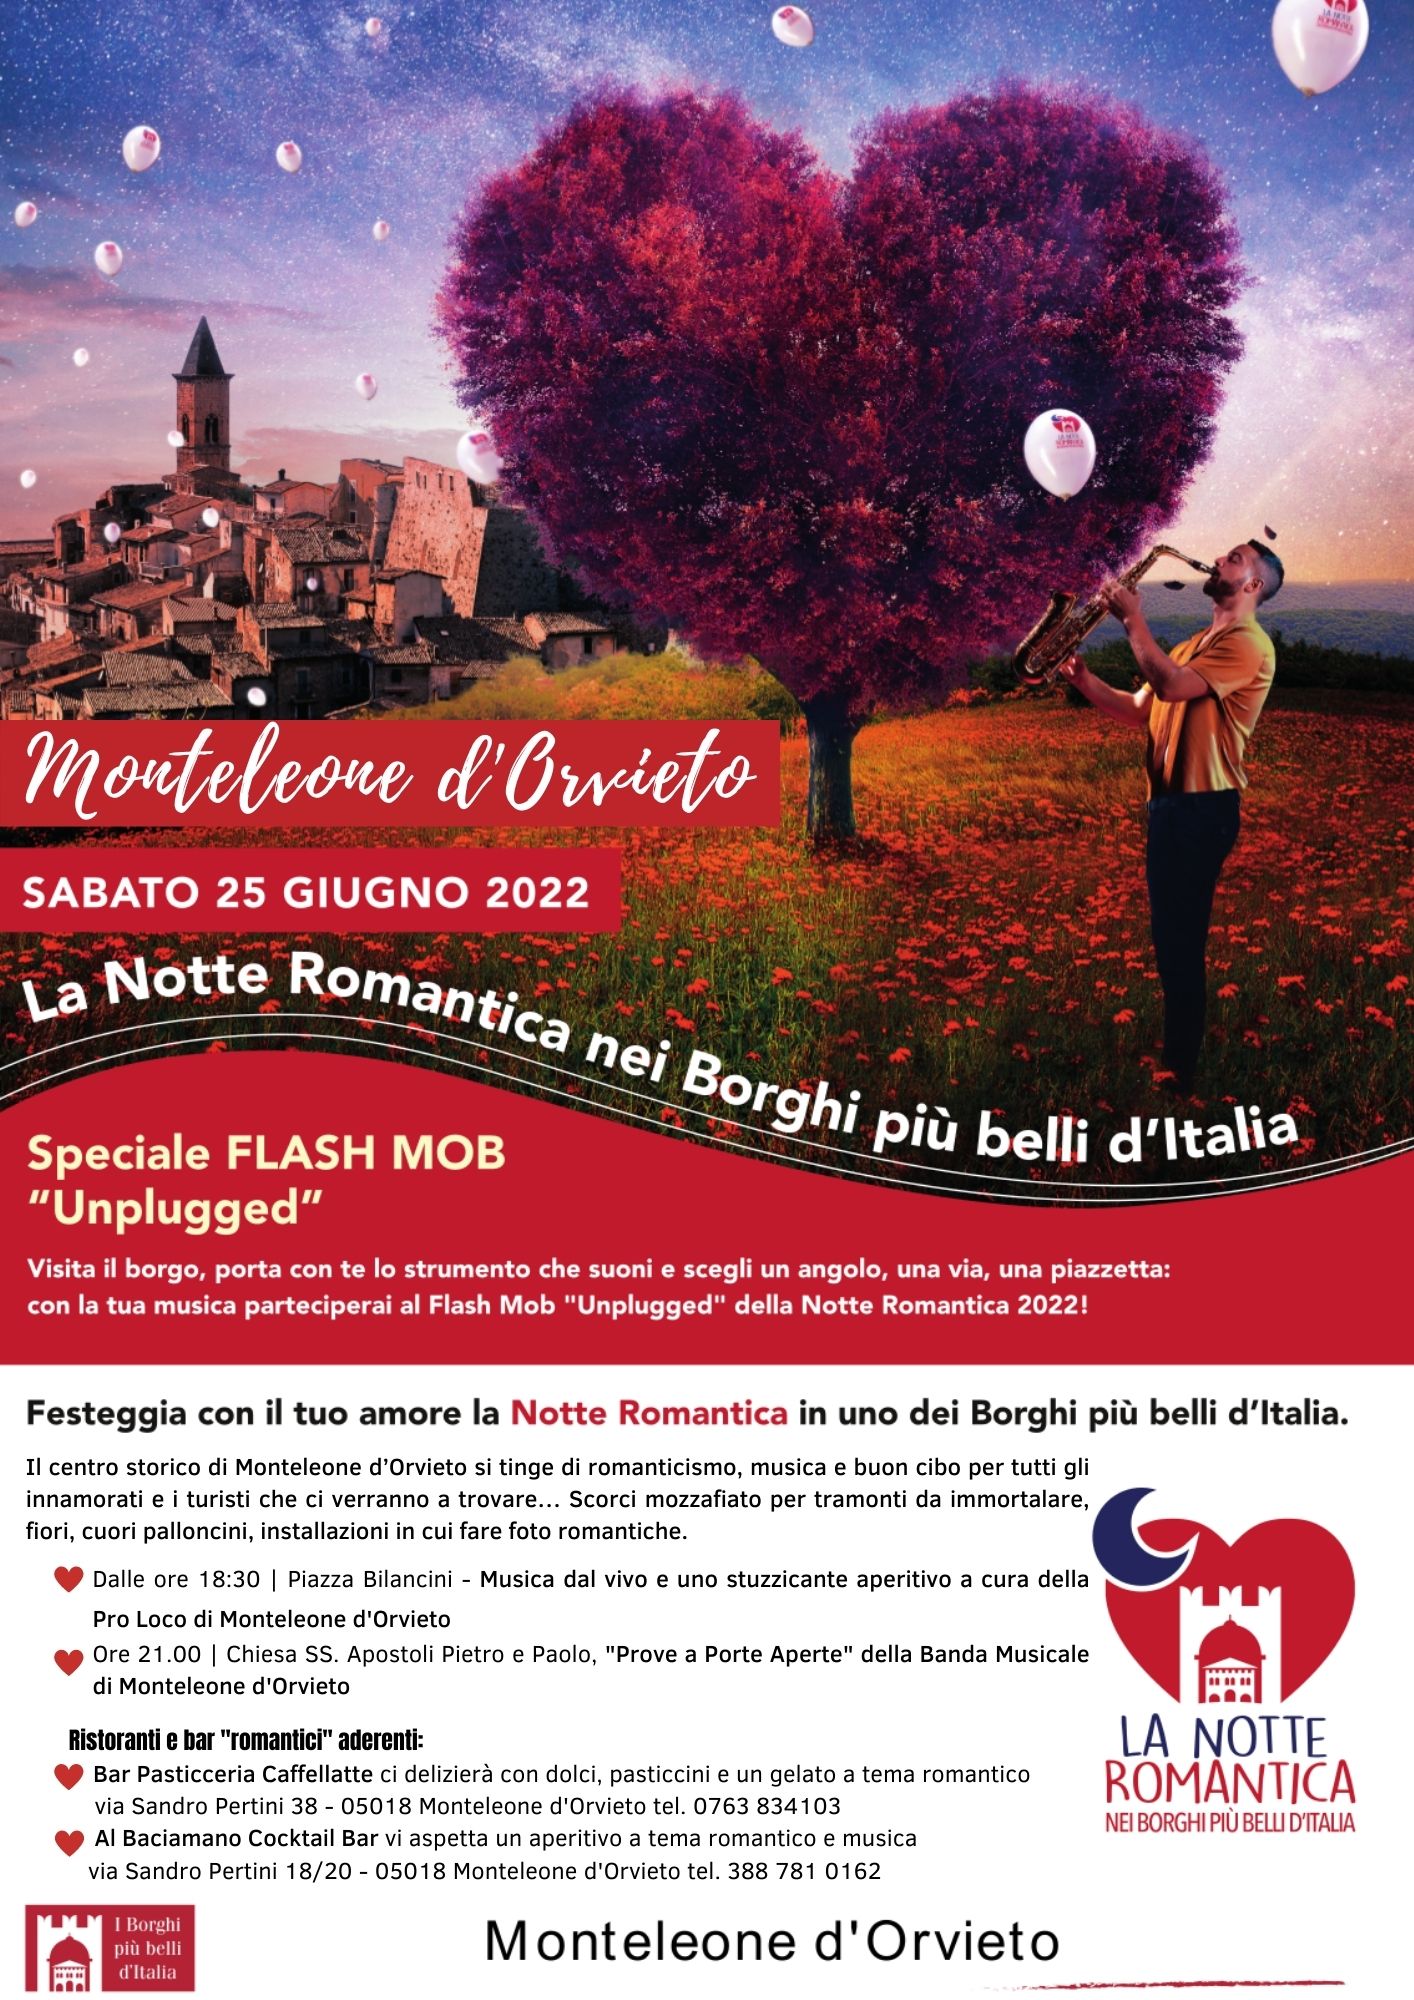 25 GIUGNO 2022: LA NOTTE ROMANTICA NEI BORGHI PIU' BELLI D'ITALIA